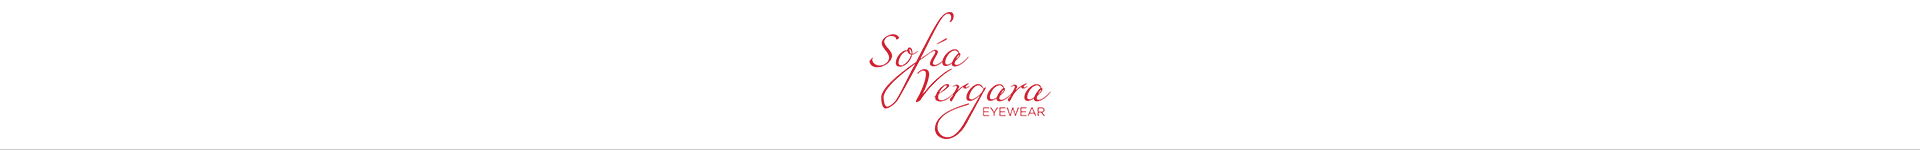 Shop Sofia Vergara Eyeglasses